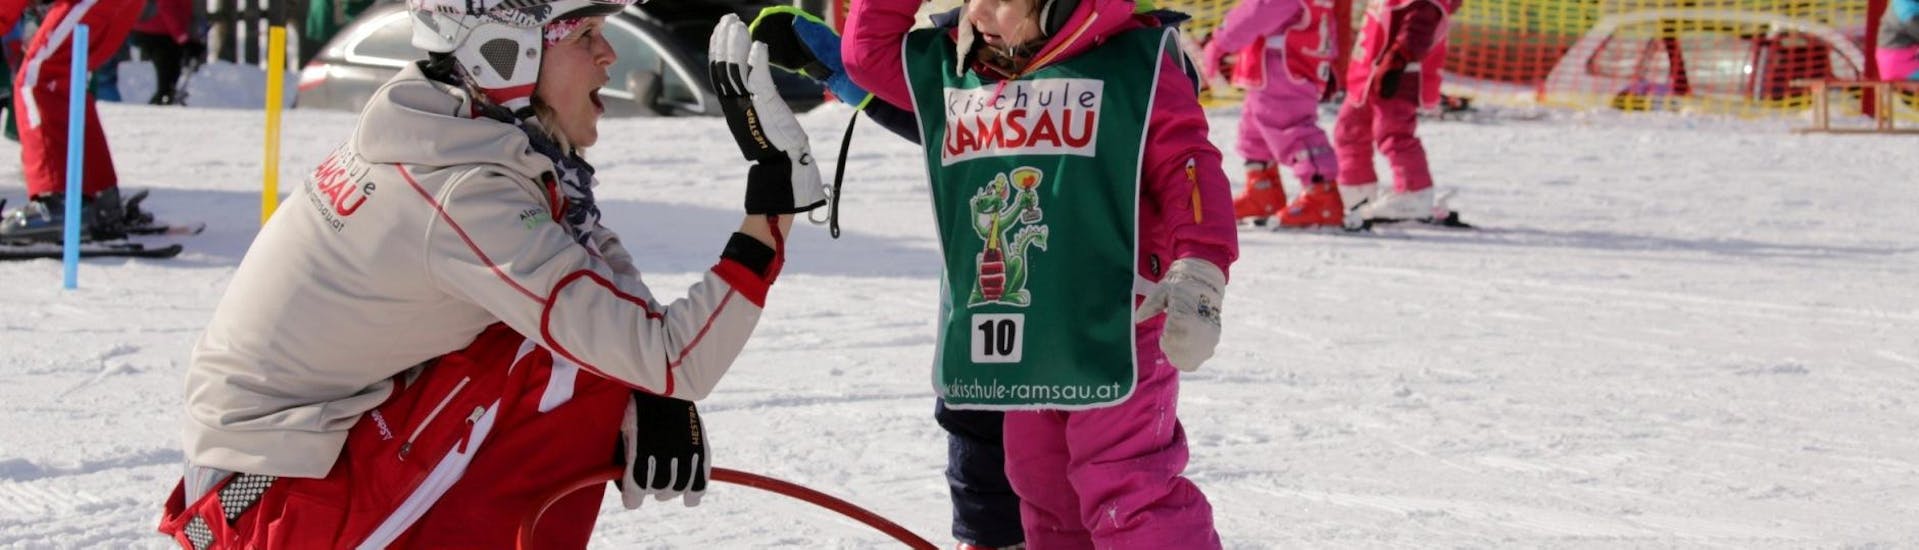 Een skileraar geeft een kind een high-five tijdens de skilessen voor kinderen "Bambini" voor alle niveaus bij skischool Ramsau.